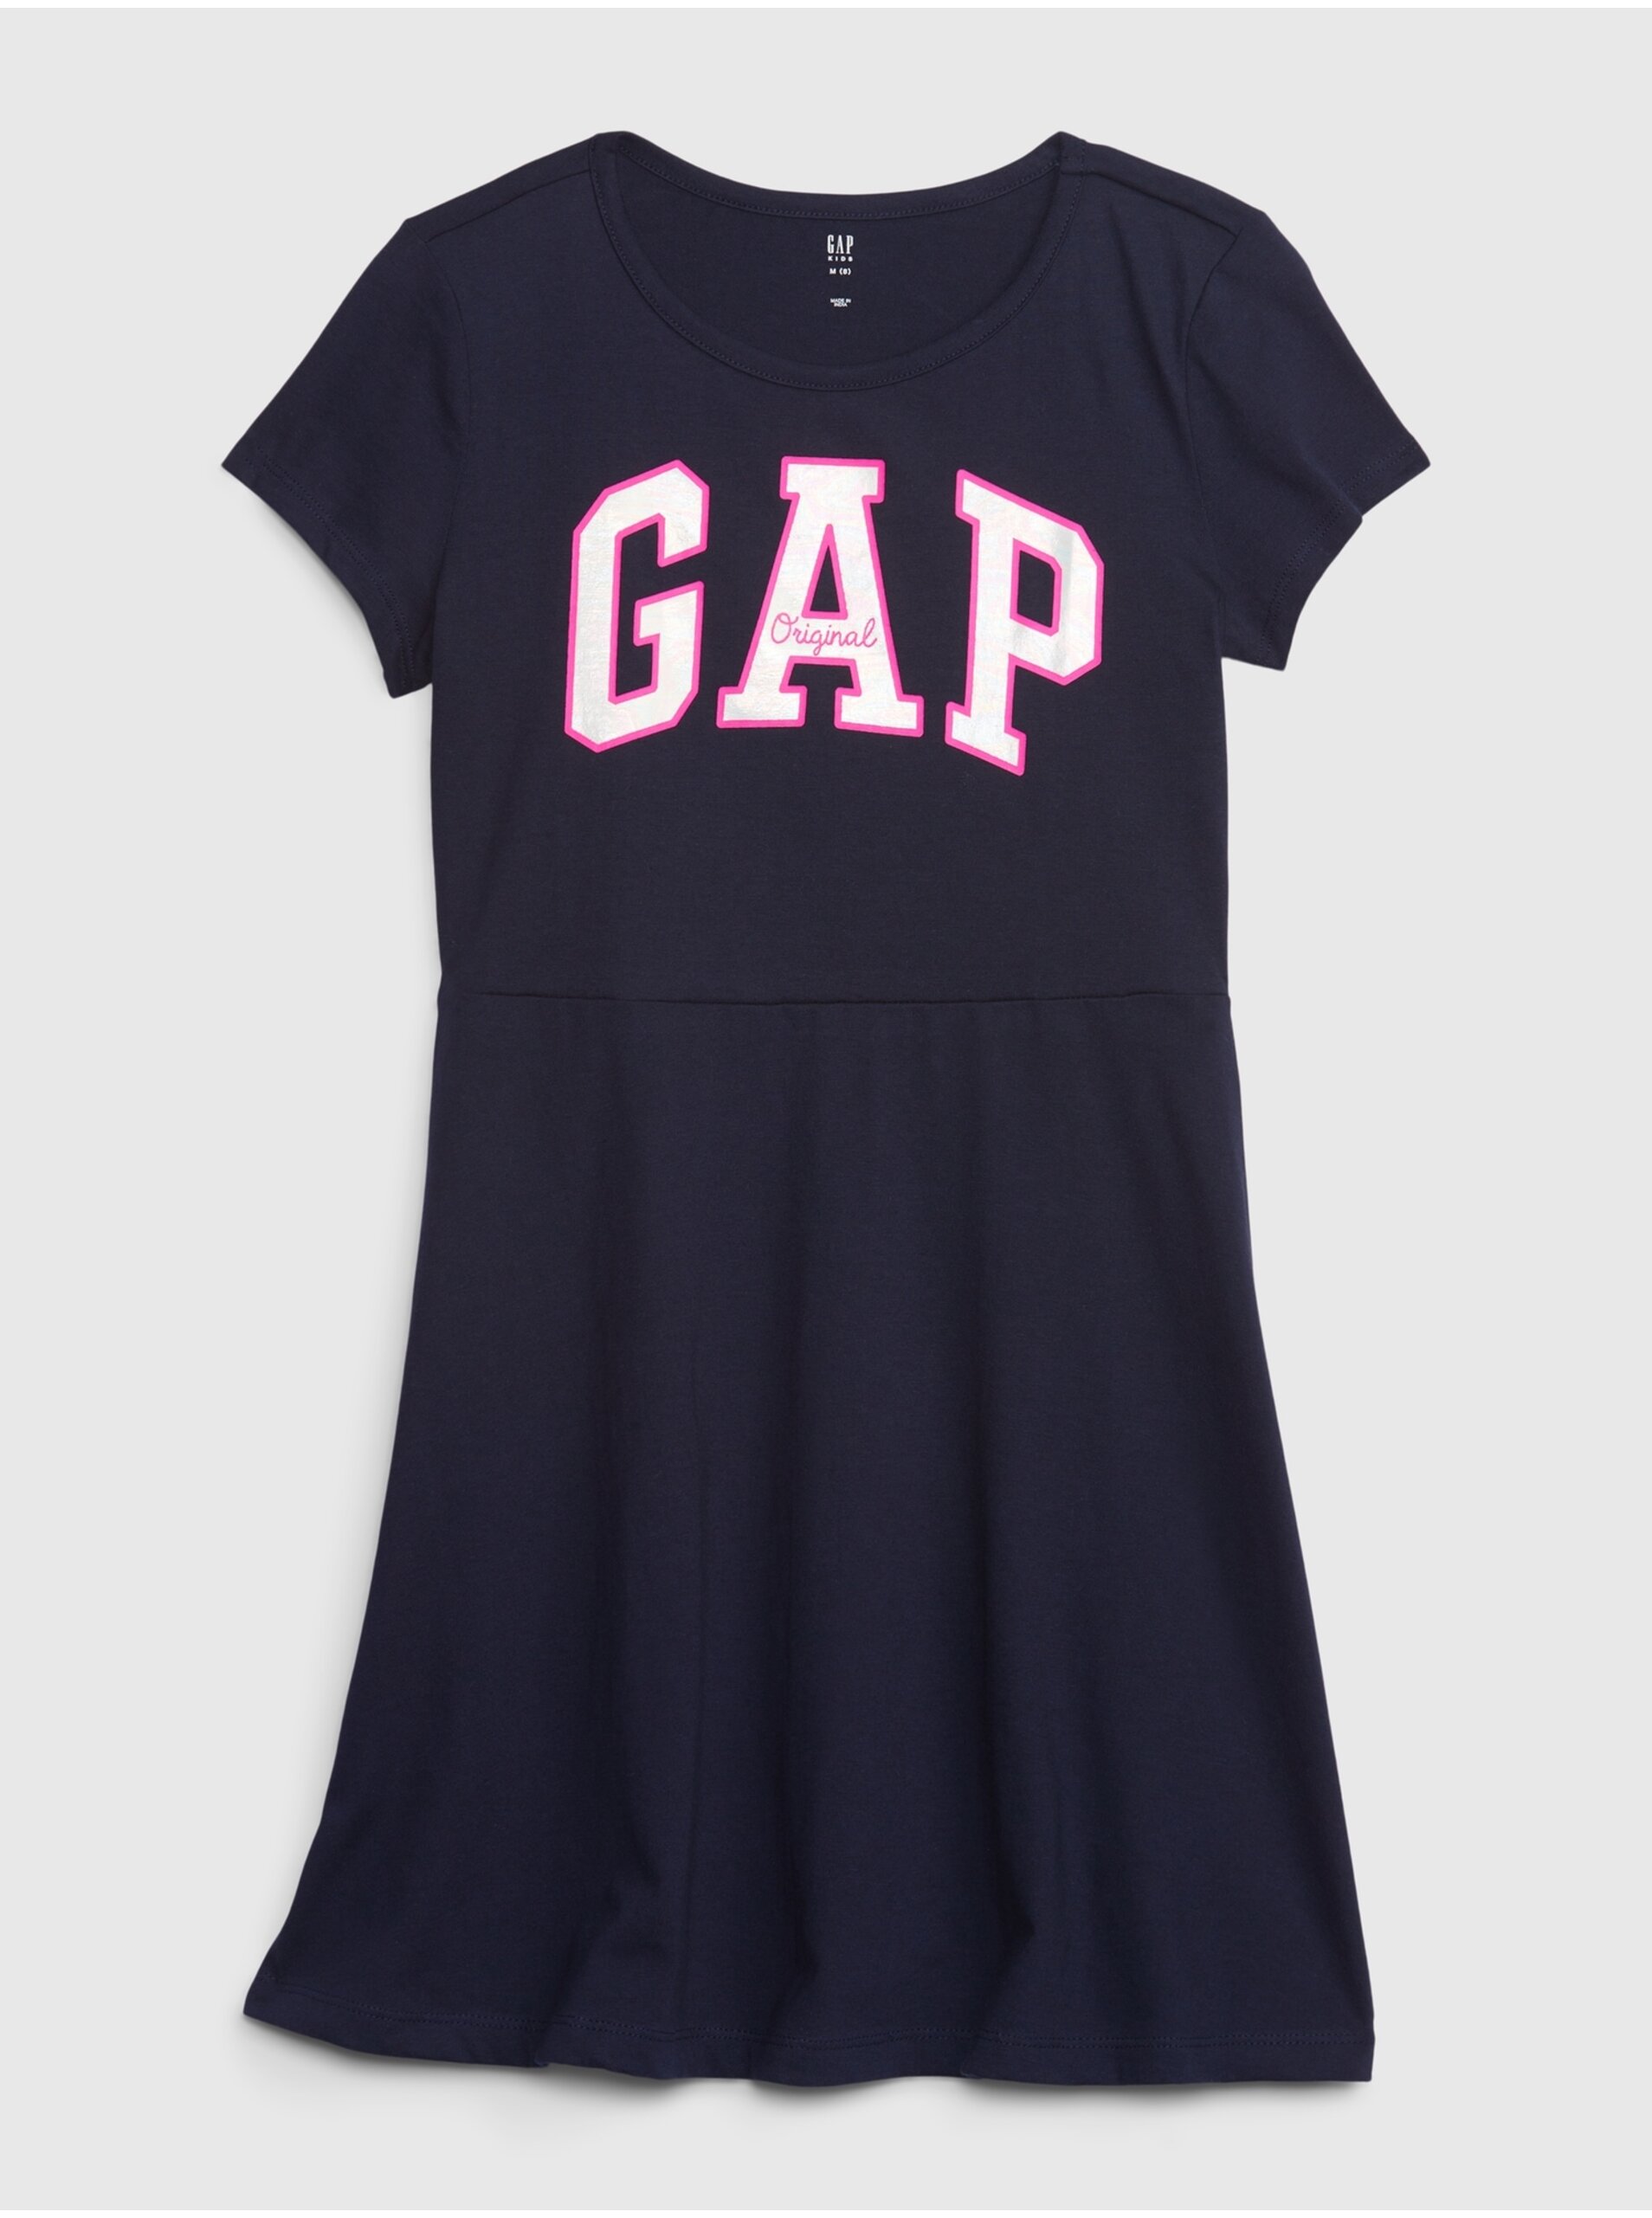 Lacno Tmavomodré dievčenské letné šaty s logom GAP